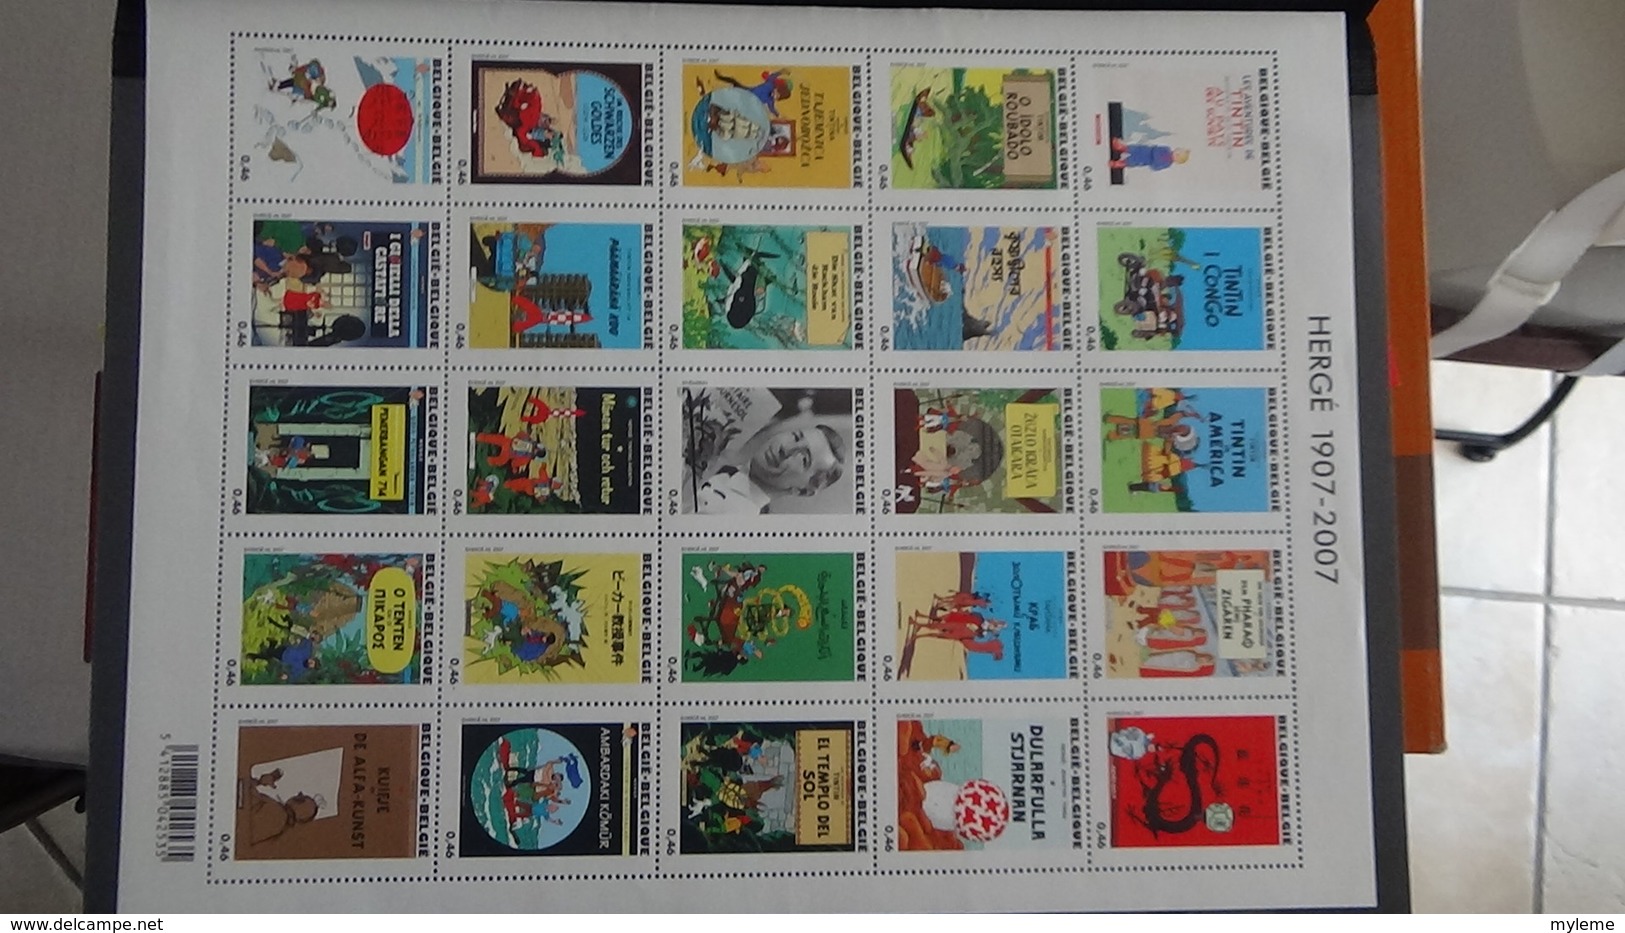 D88 Collection Blocs, carnets et timbres ** de différents pays dont beaucoup de Tunise**  A saisir !!!